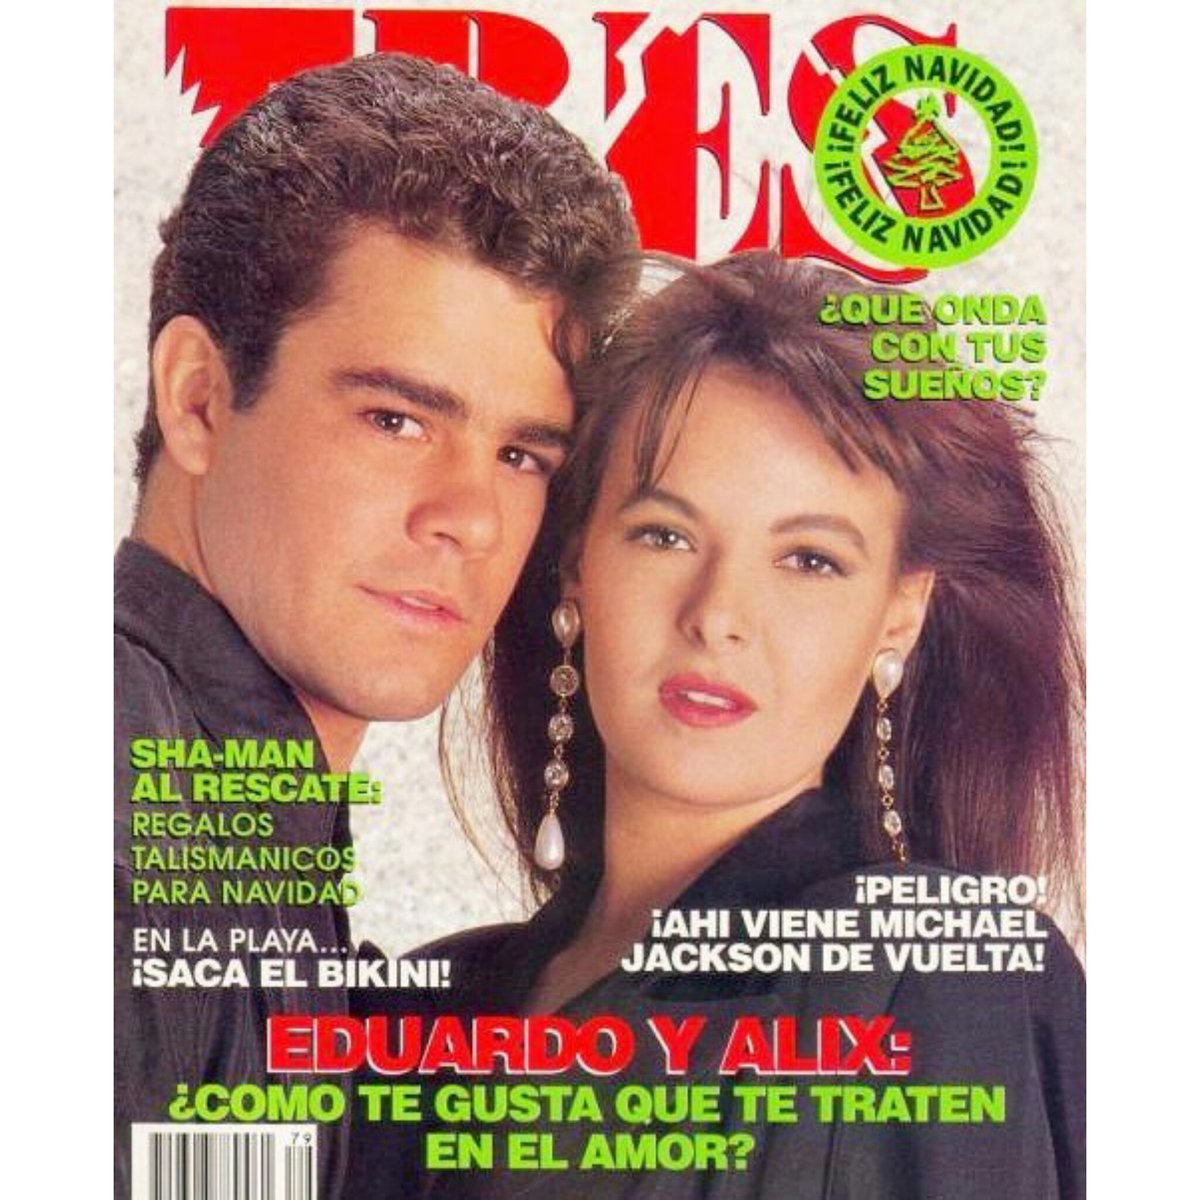 Nuestra querida @alixbauer en portada junto a @ECapetillo para la @revista_eres en el año de 1991. 💙

#alixbauer
#eduardocapetillo
#Timbiriche
#TBThursday